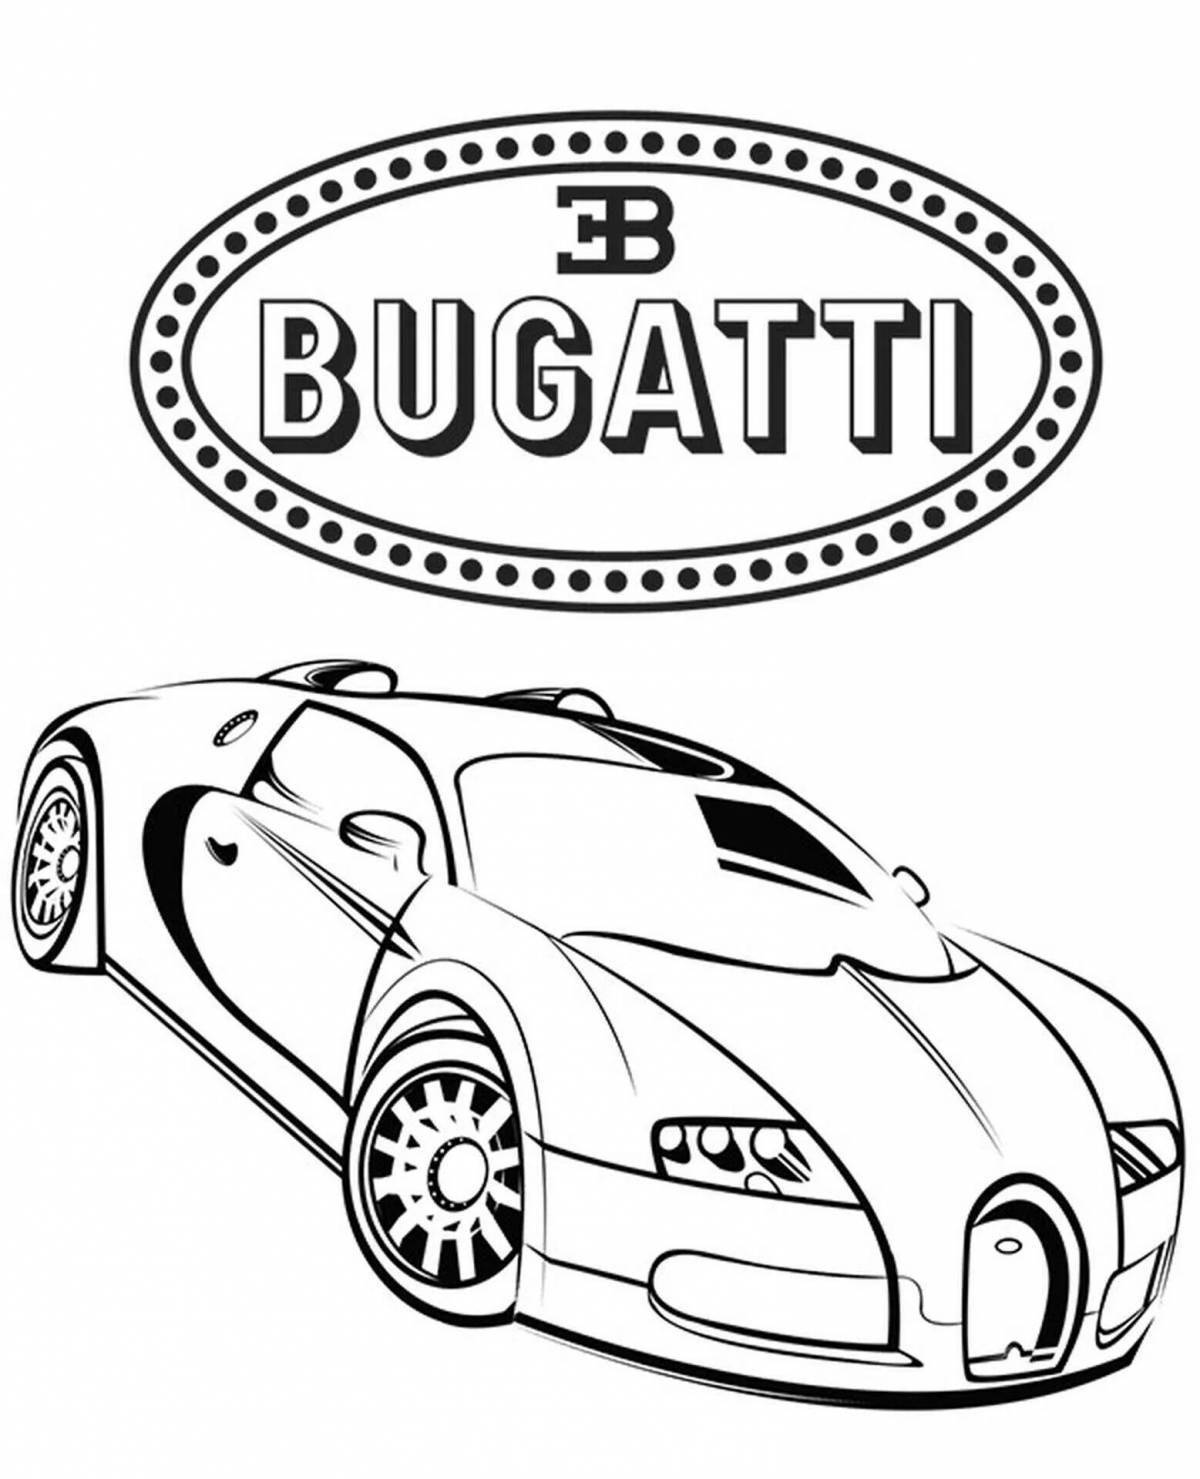 Bugatti police coloring book